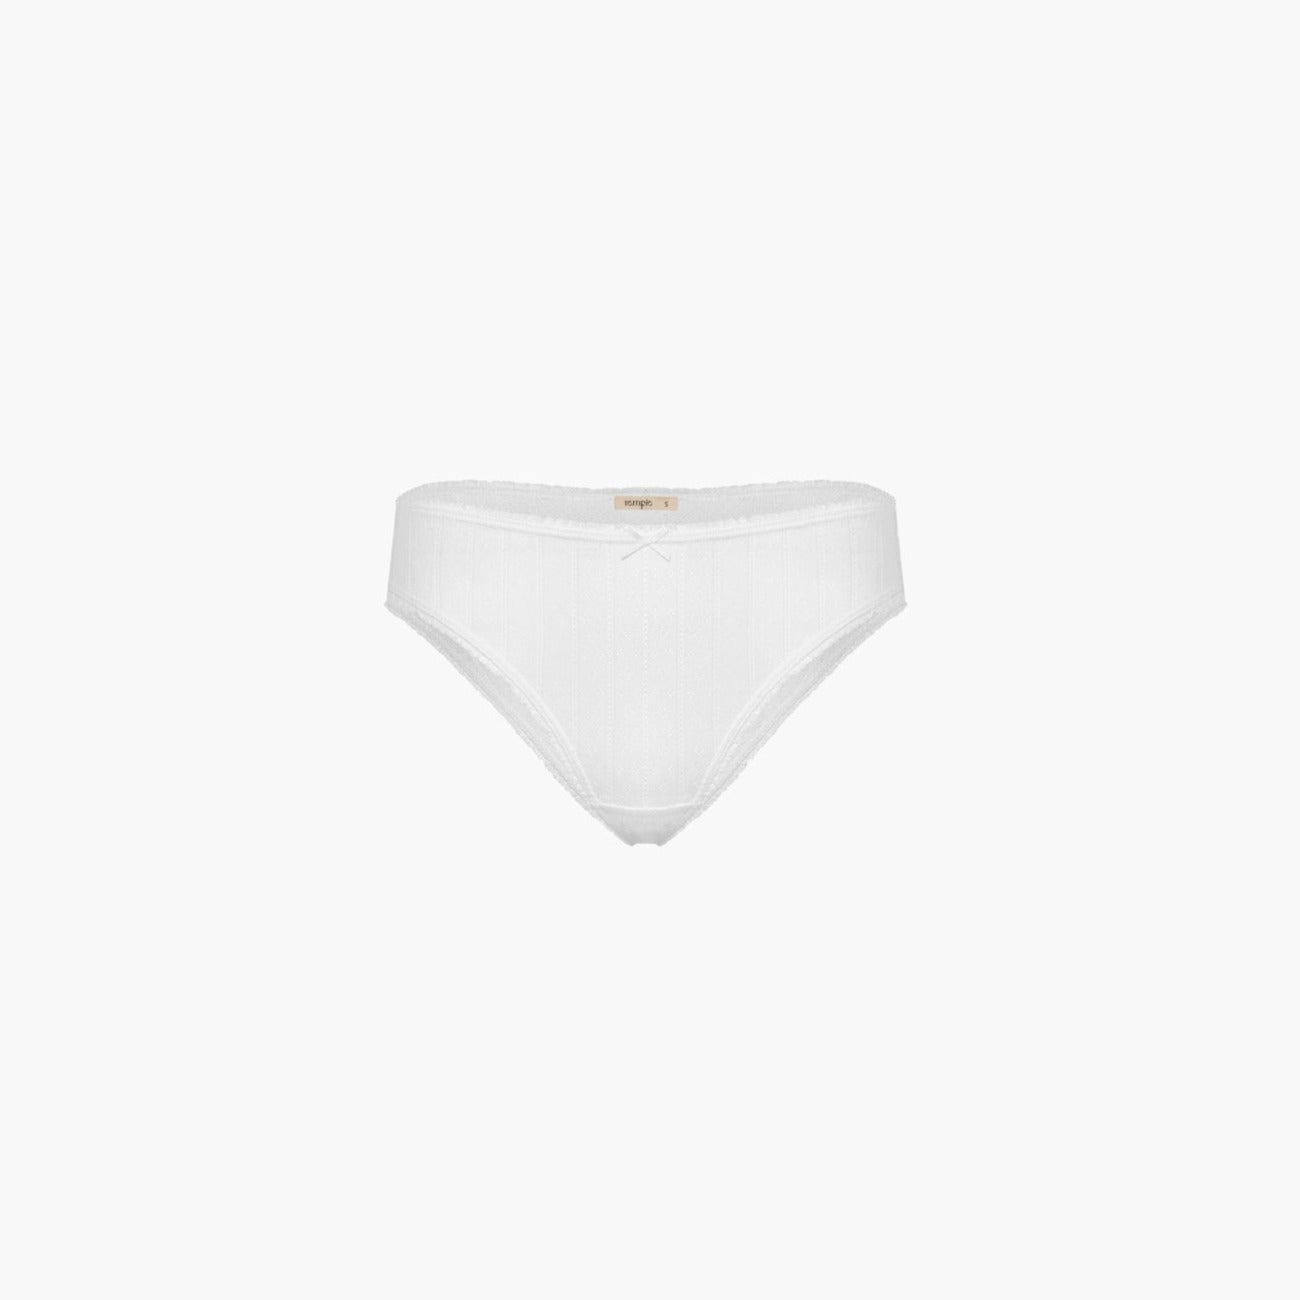 Women :: Lingerie :: Underwear :: Briefs :: Dawa White Panties - Urbankissed